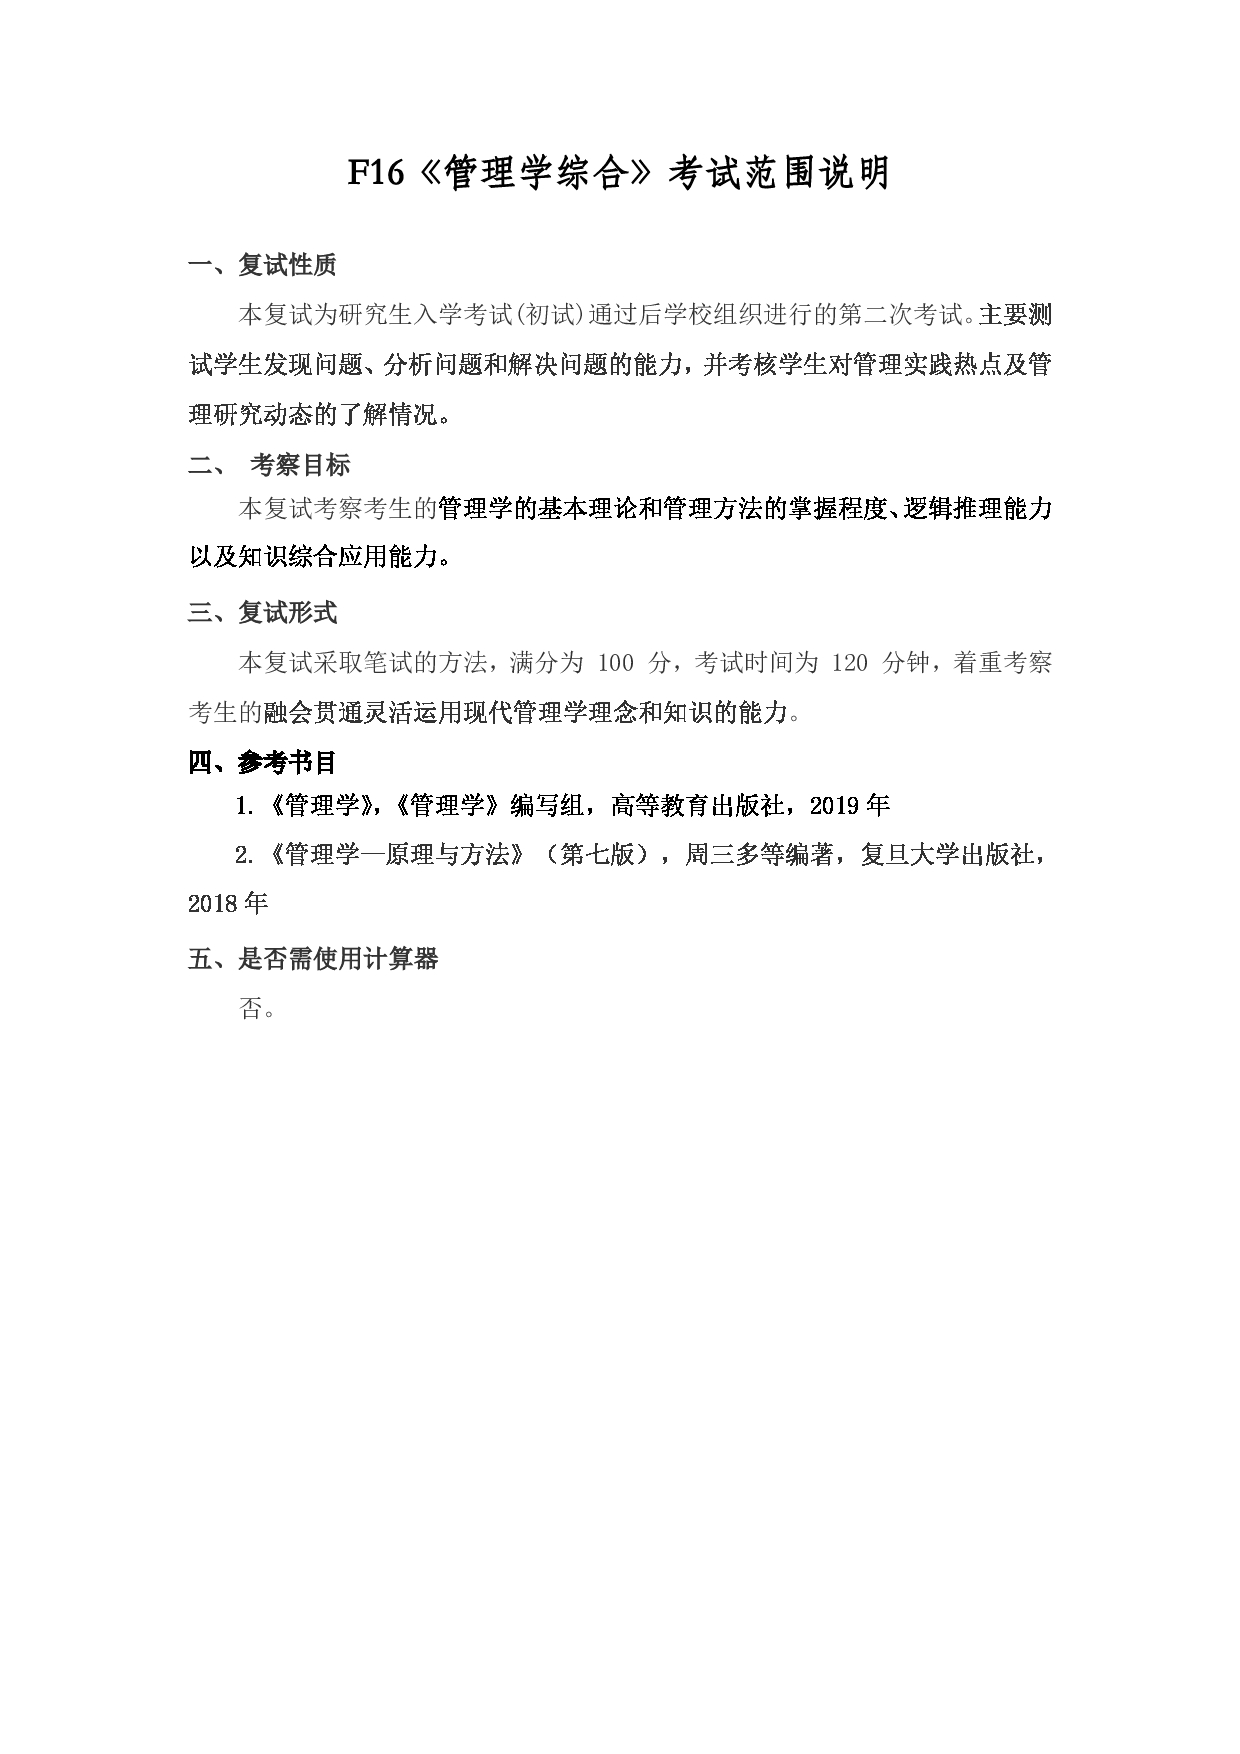 2022考研大纲：上海海洋大学2022年考研自命题科目 F16管理学综合 考试大纲第1页